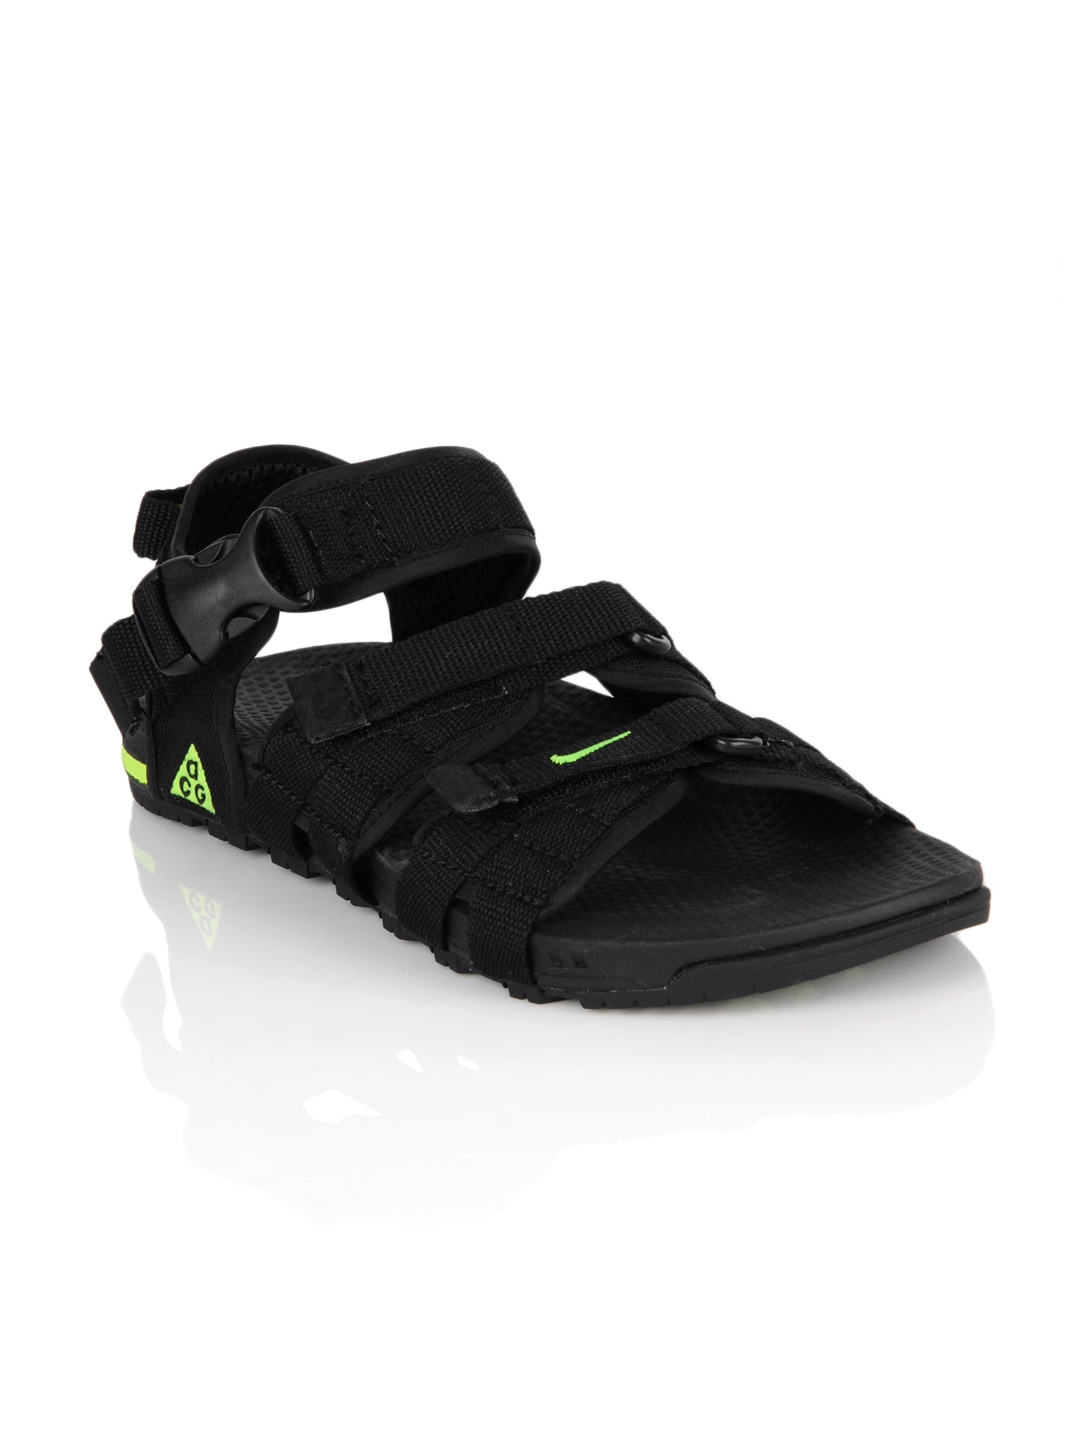 Nike Men Air Deschutz Black Sandals